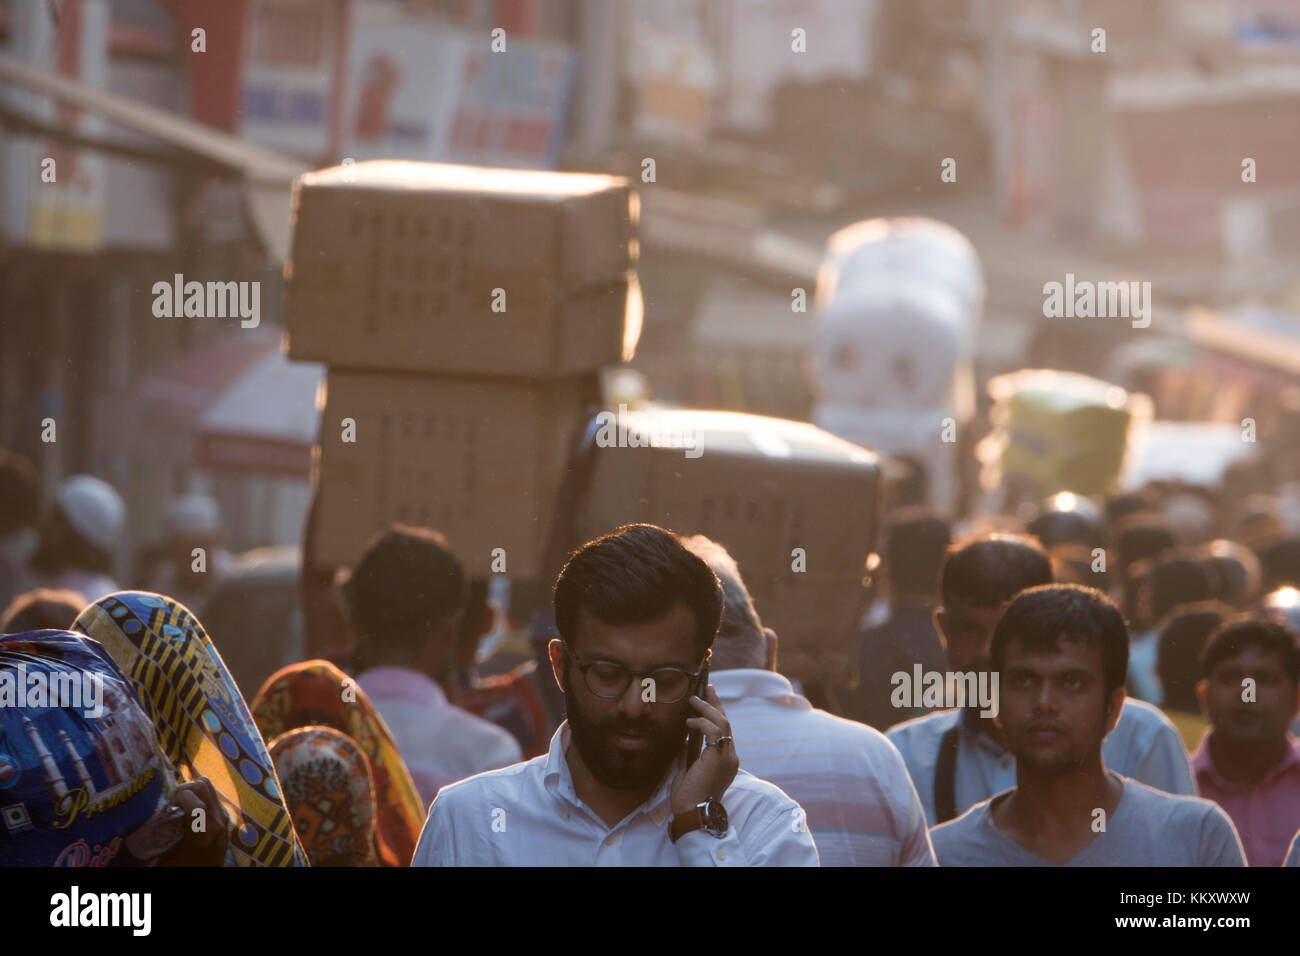 Busy market street scene in central Mumbai, India Stock Photo